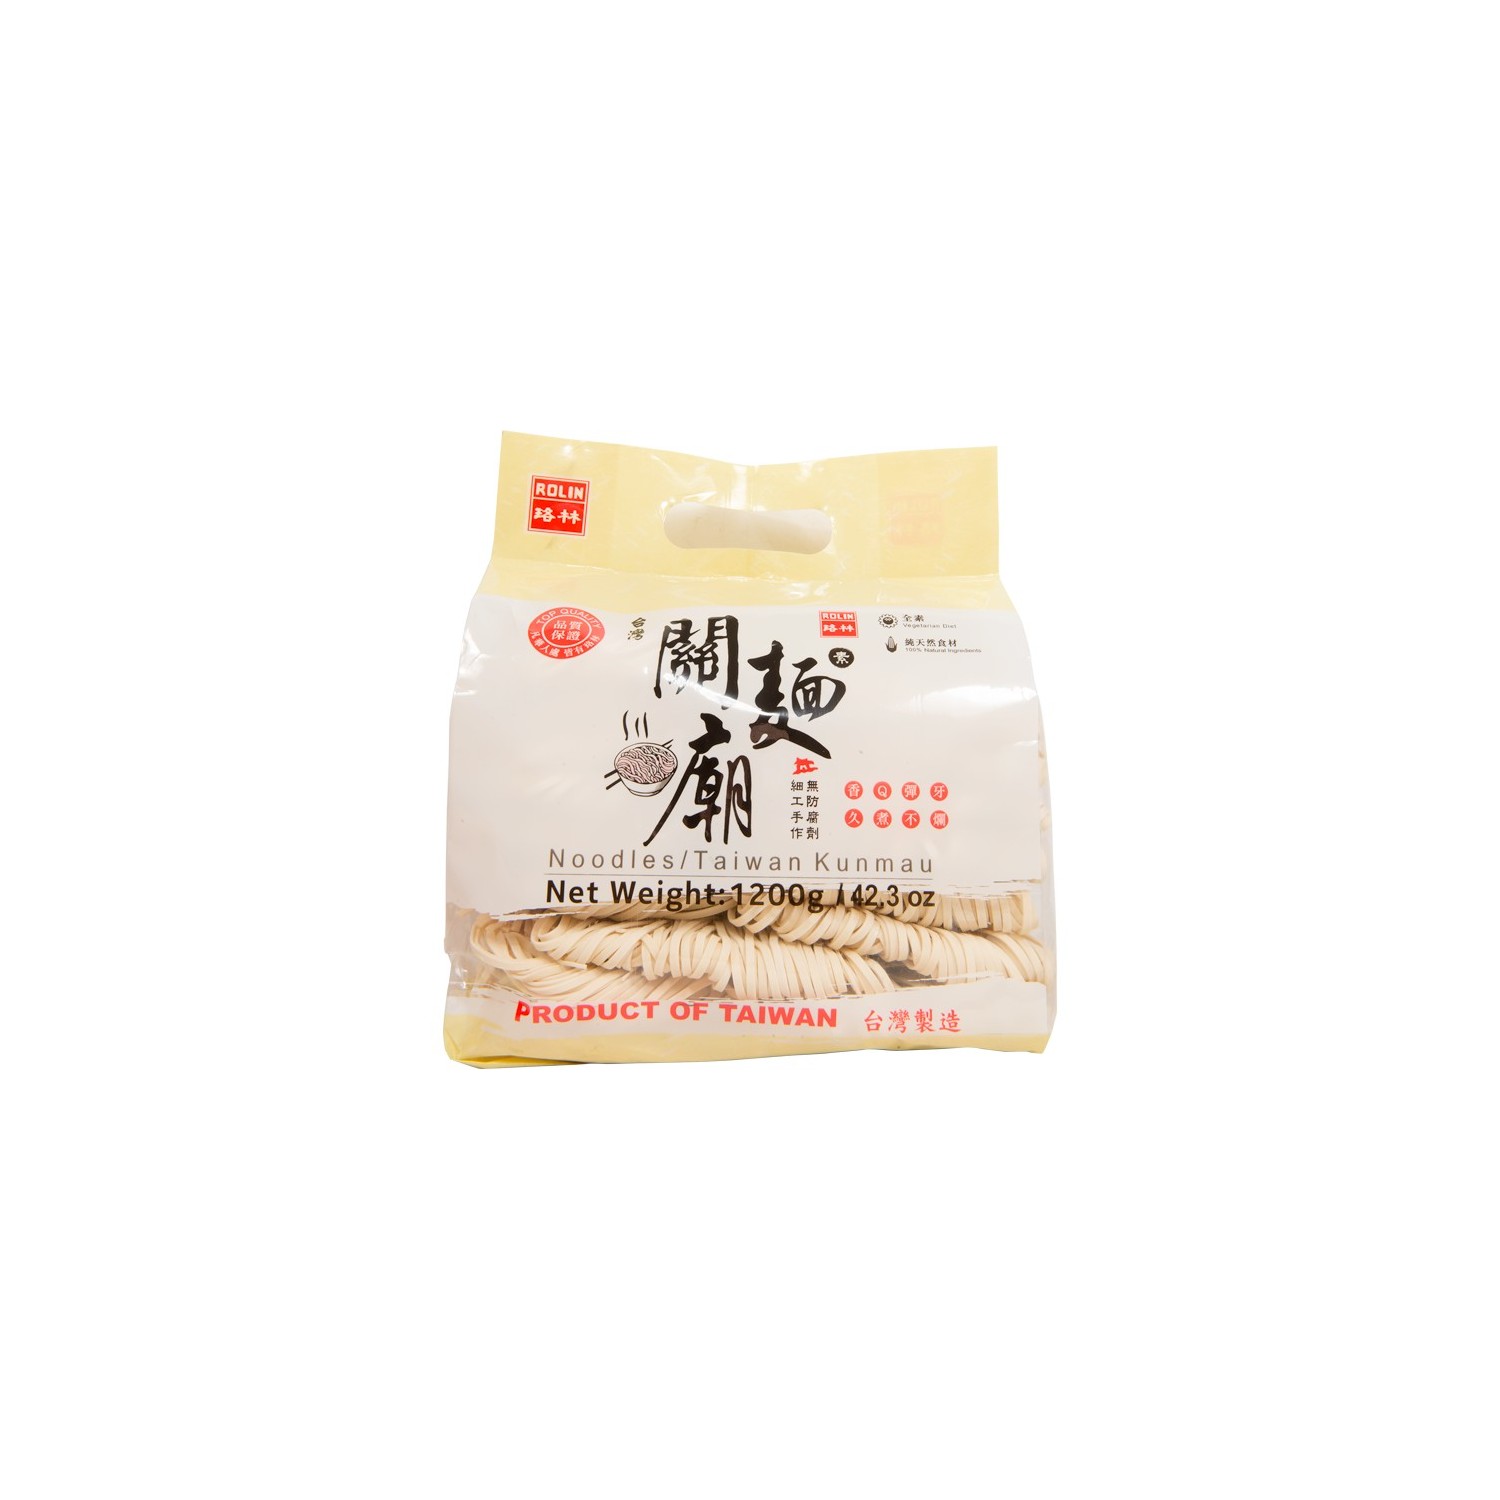 Rolin - Taiwan Kunmau - Noodles - 1200g